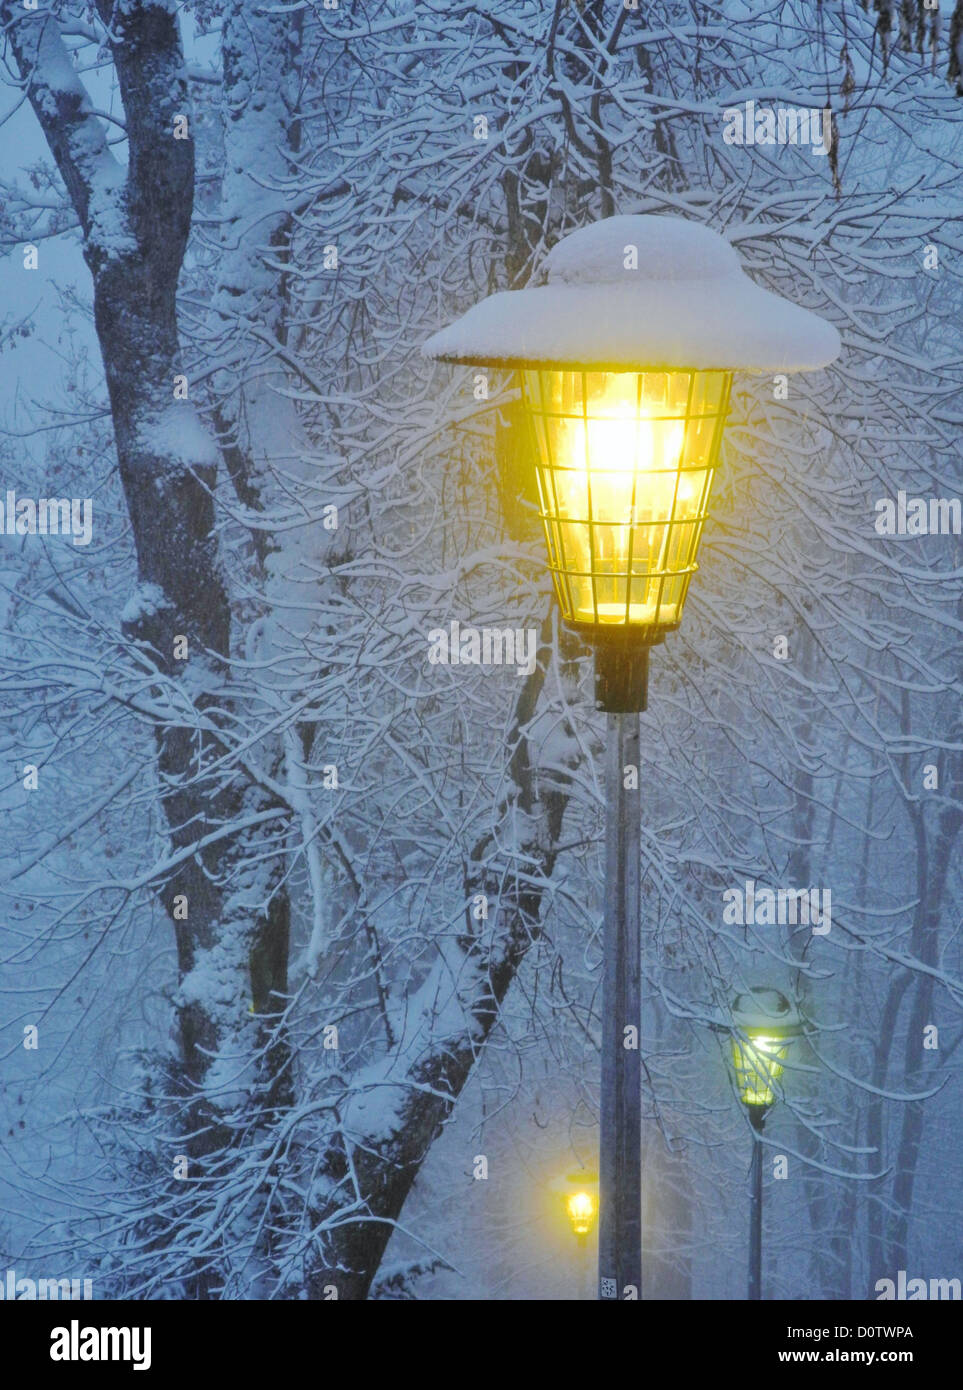 Schweiz, Europa, Leysin, Winter, Schnee, Kälte, Laterne, Straßenlaterne,  Licht, Energie, Bäume, Sonnenuntergang, Dämmerung Stockfotografie - Alamy